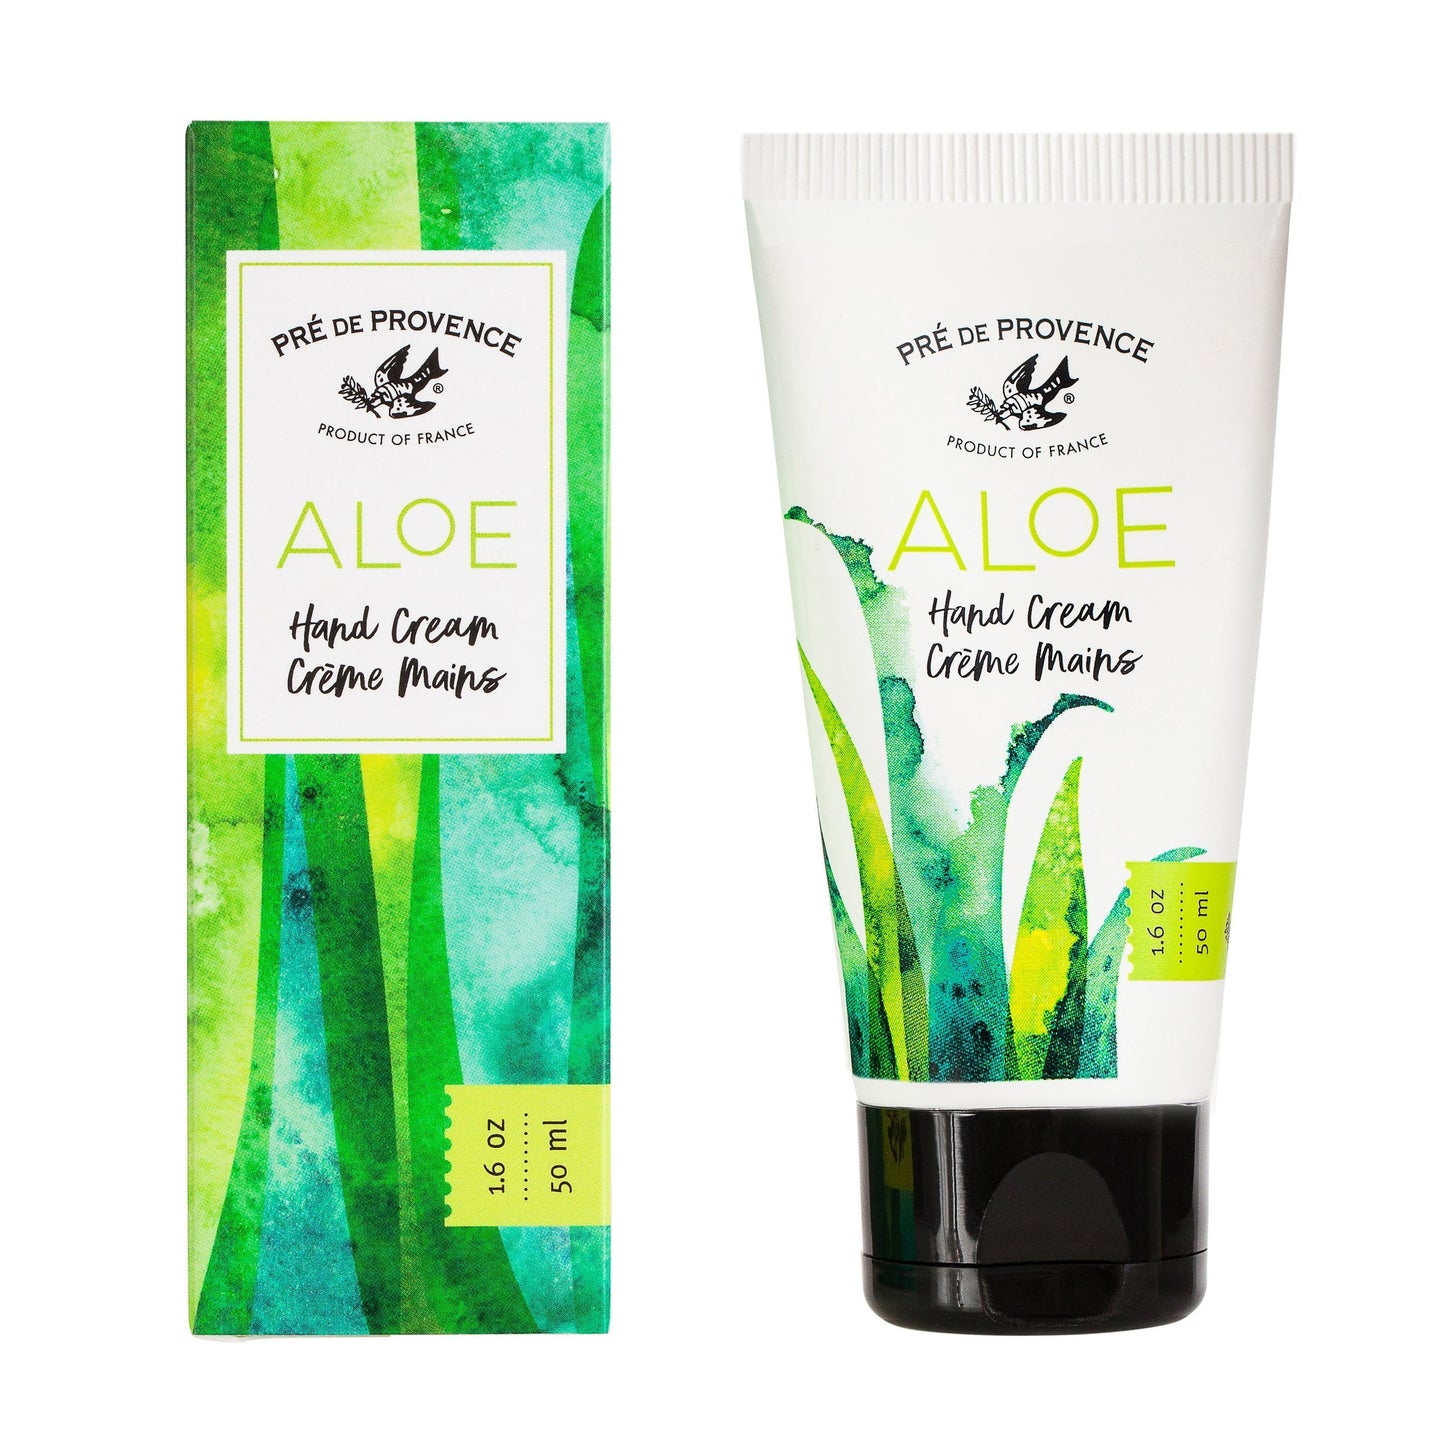 Aloe Hand Cream - r. h. ballard shop